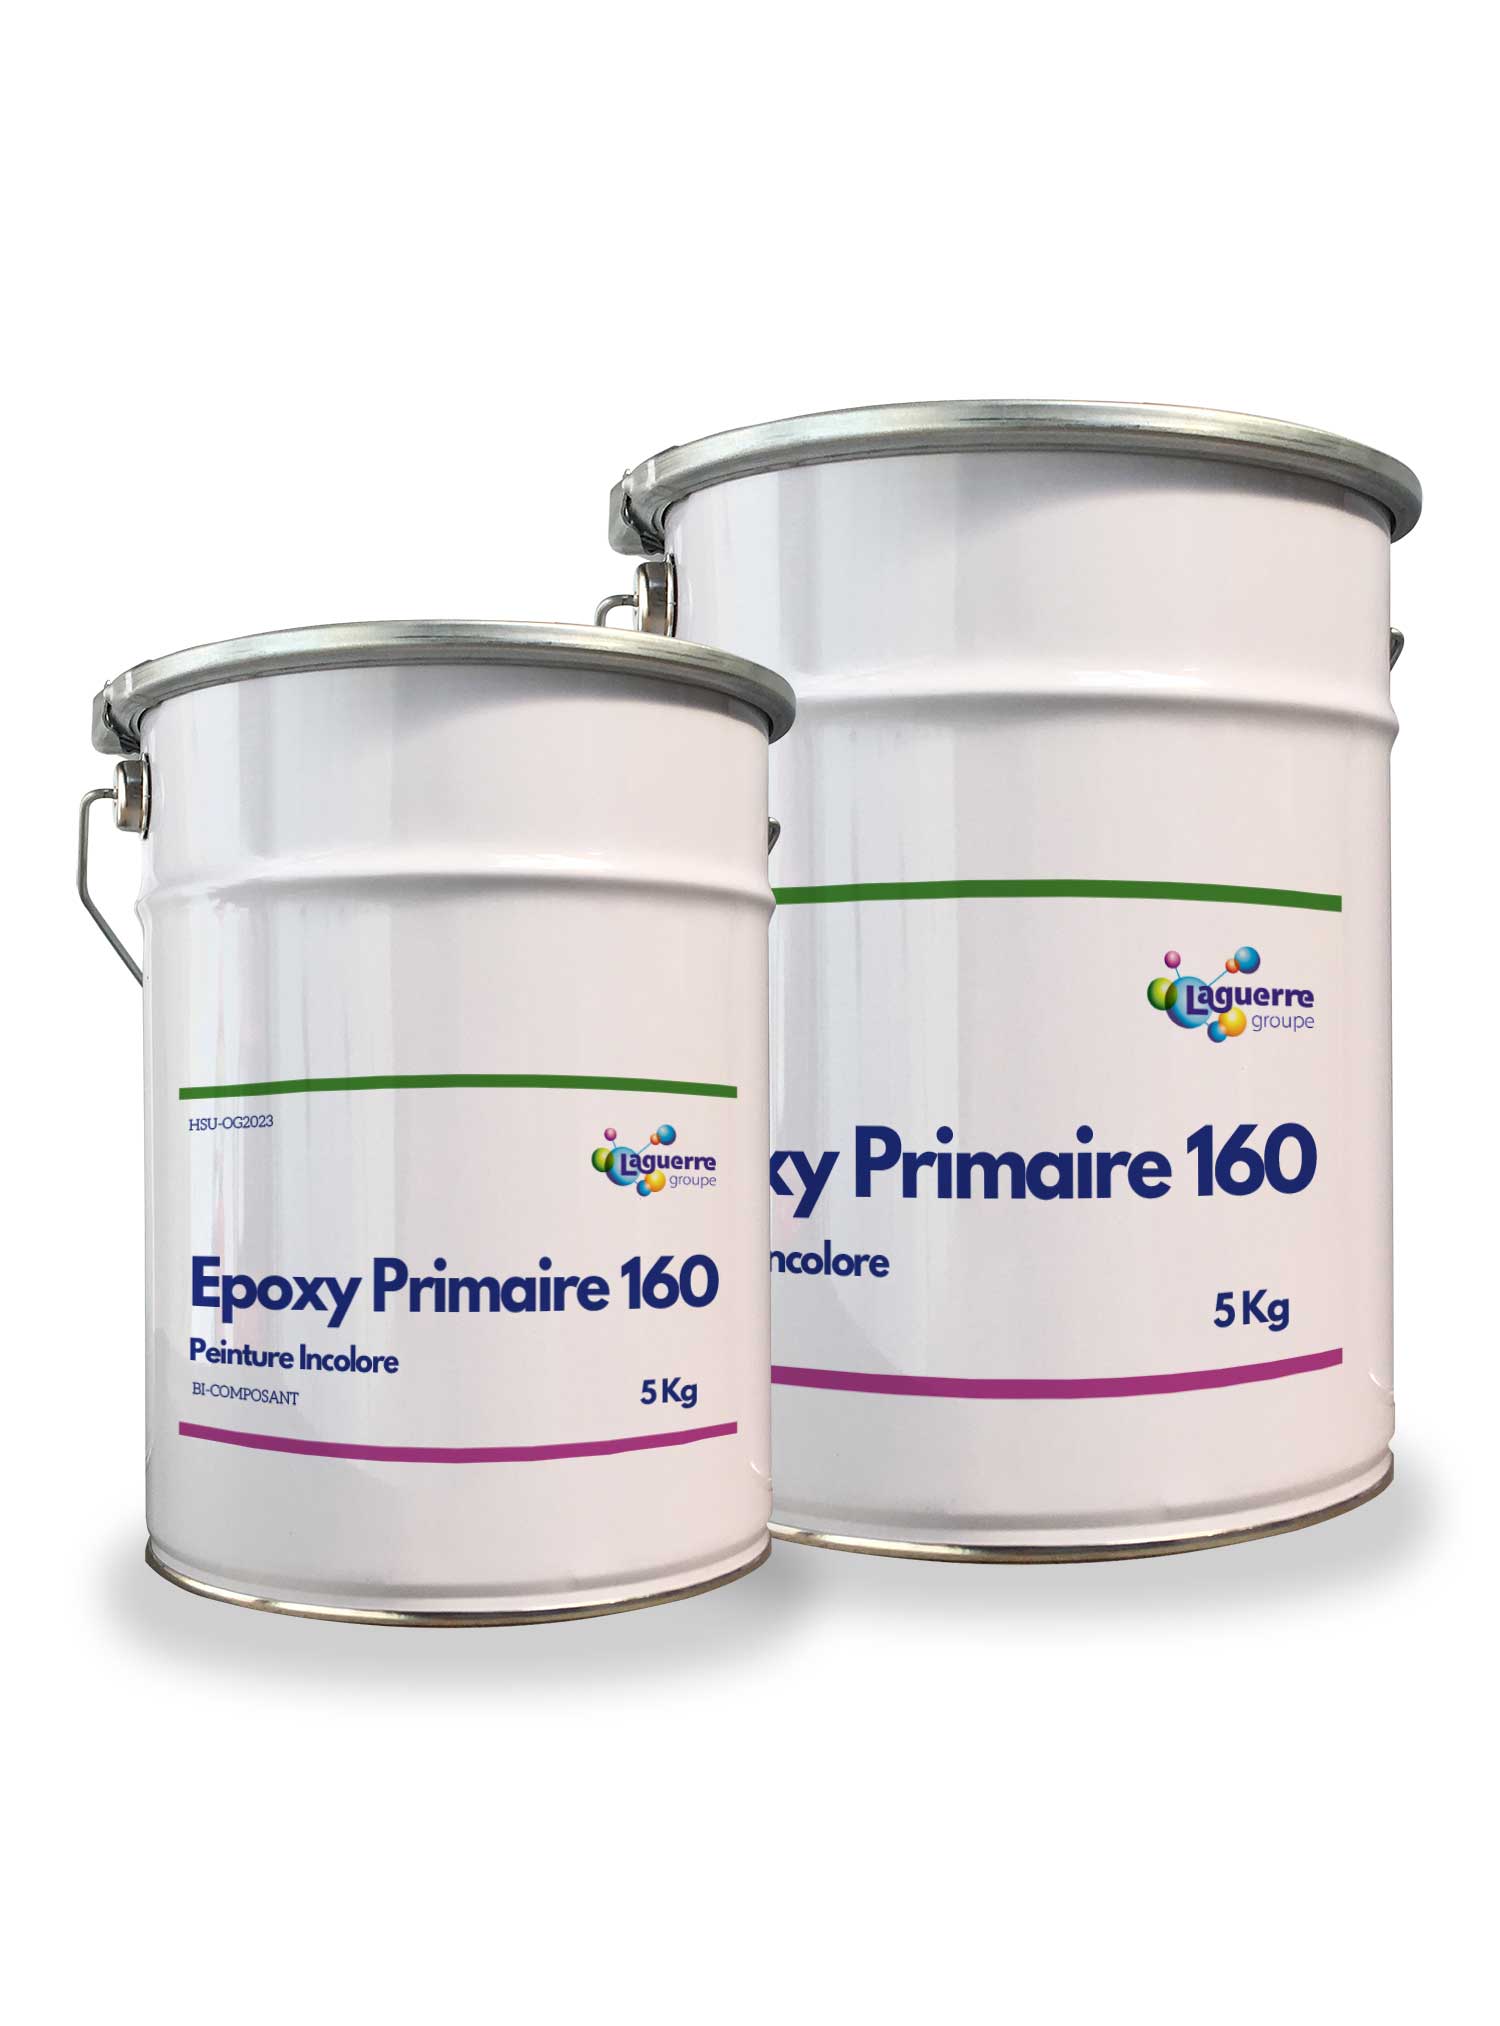 Primaire résine epoxy, fixateur peinture polyuréthane